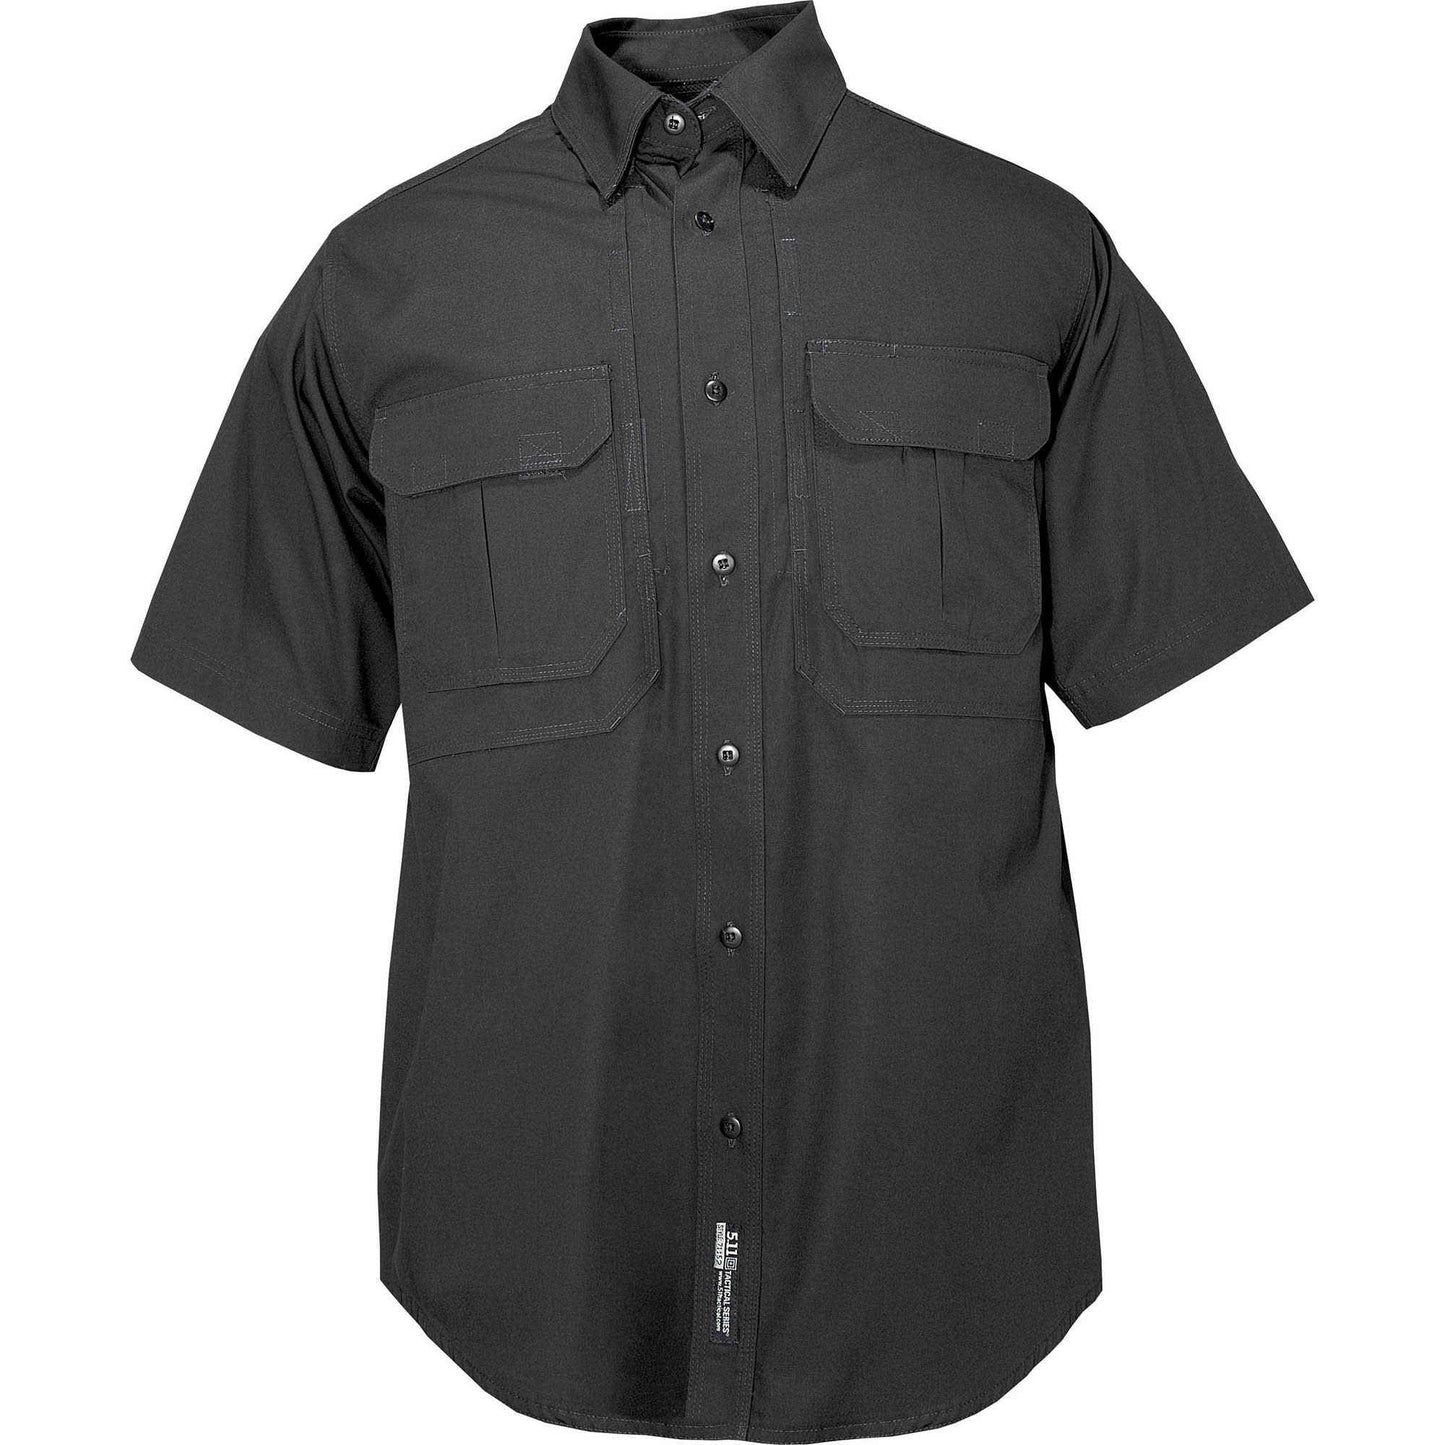 5.11 Tactical Men's Short Sleeve Tactical Shirt Black Tactical Distributors Ltd New Zealand